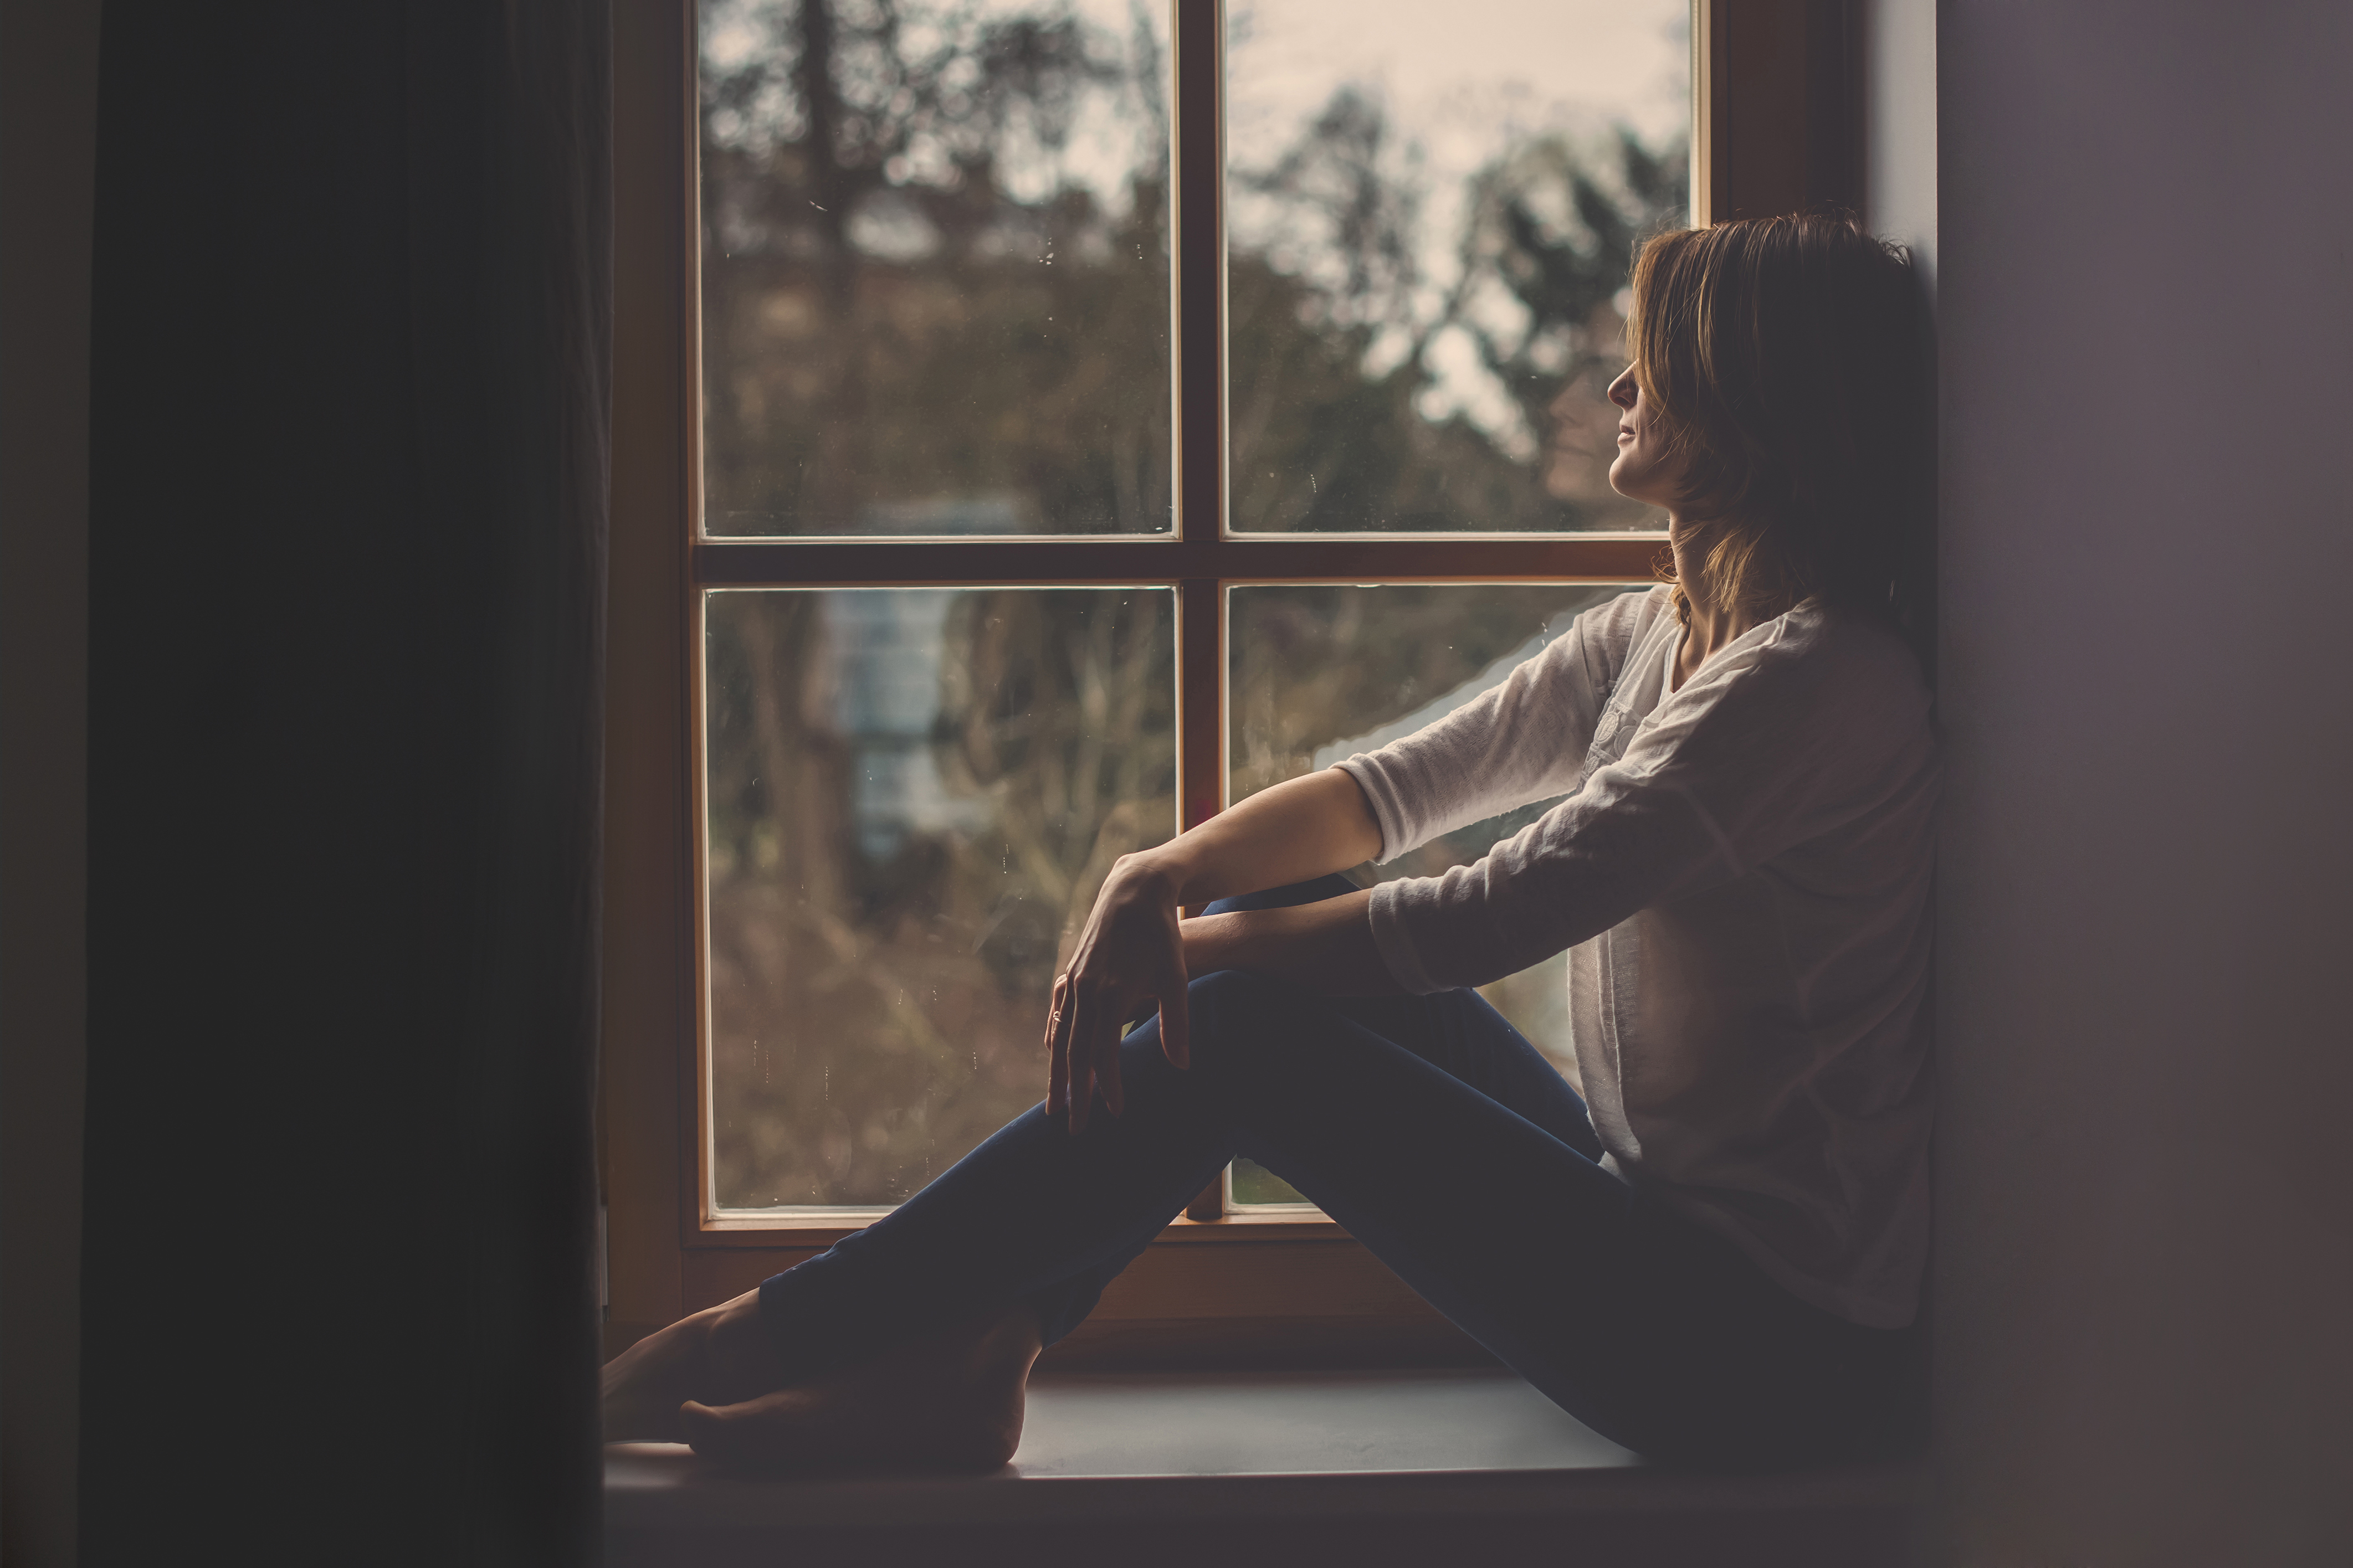 A woman sitting near a window sill looking outside | Source: Shutterstock